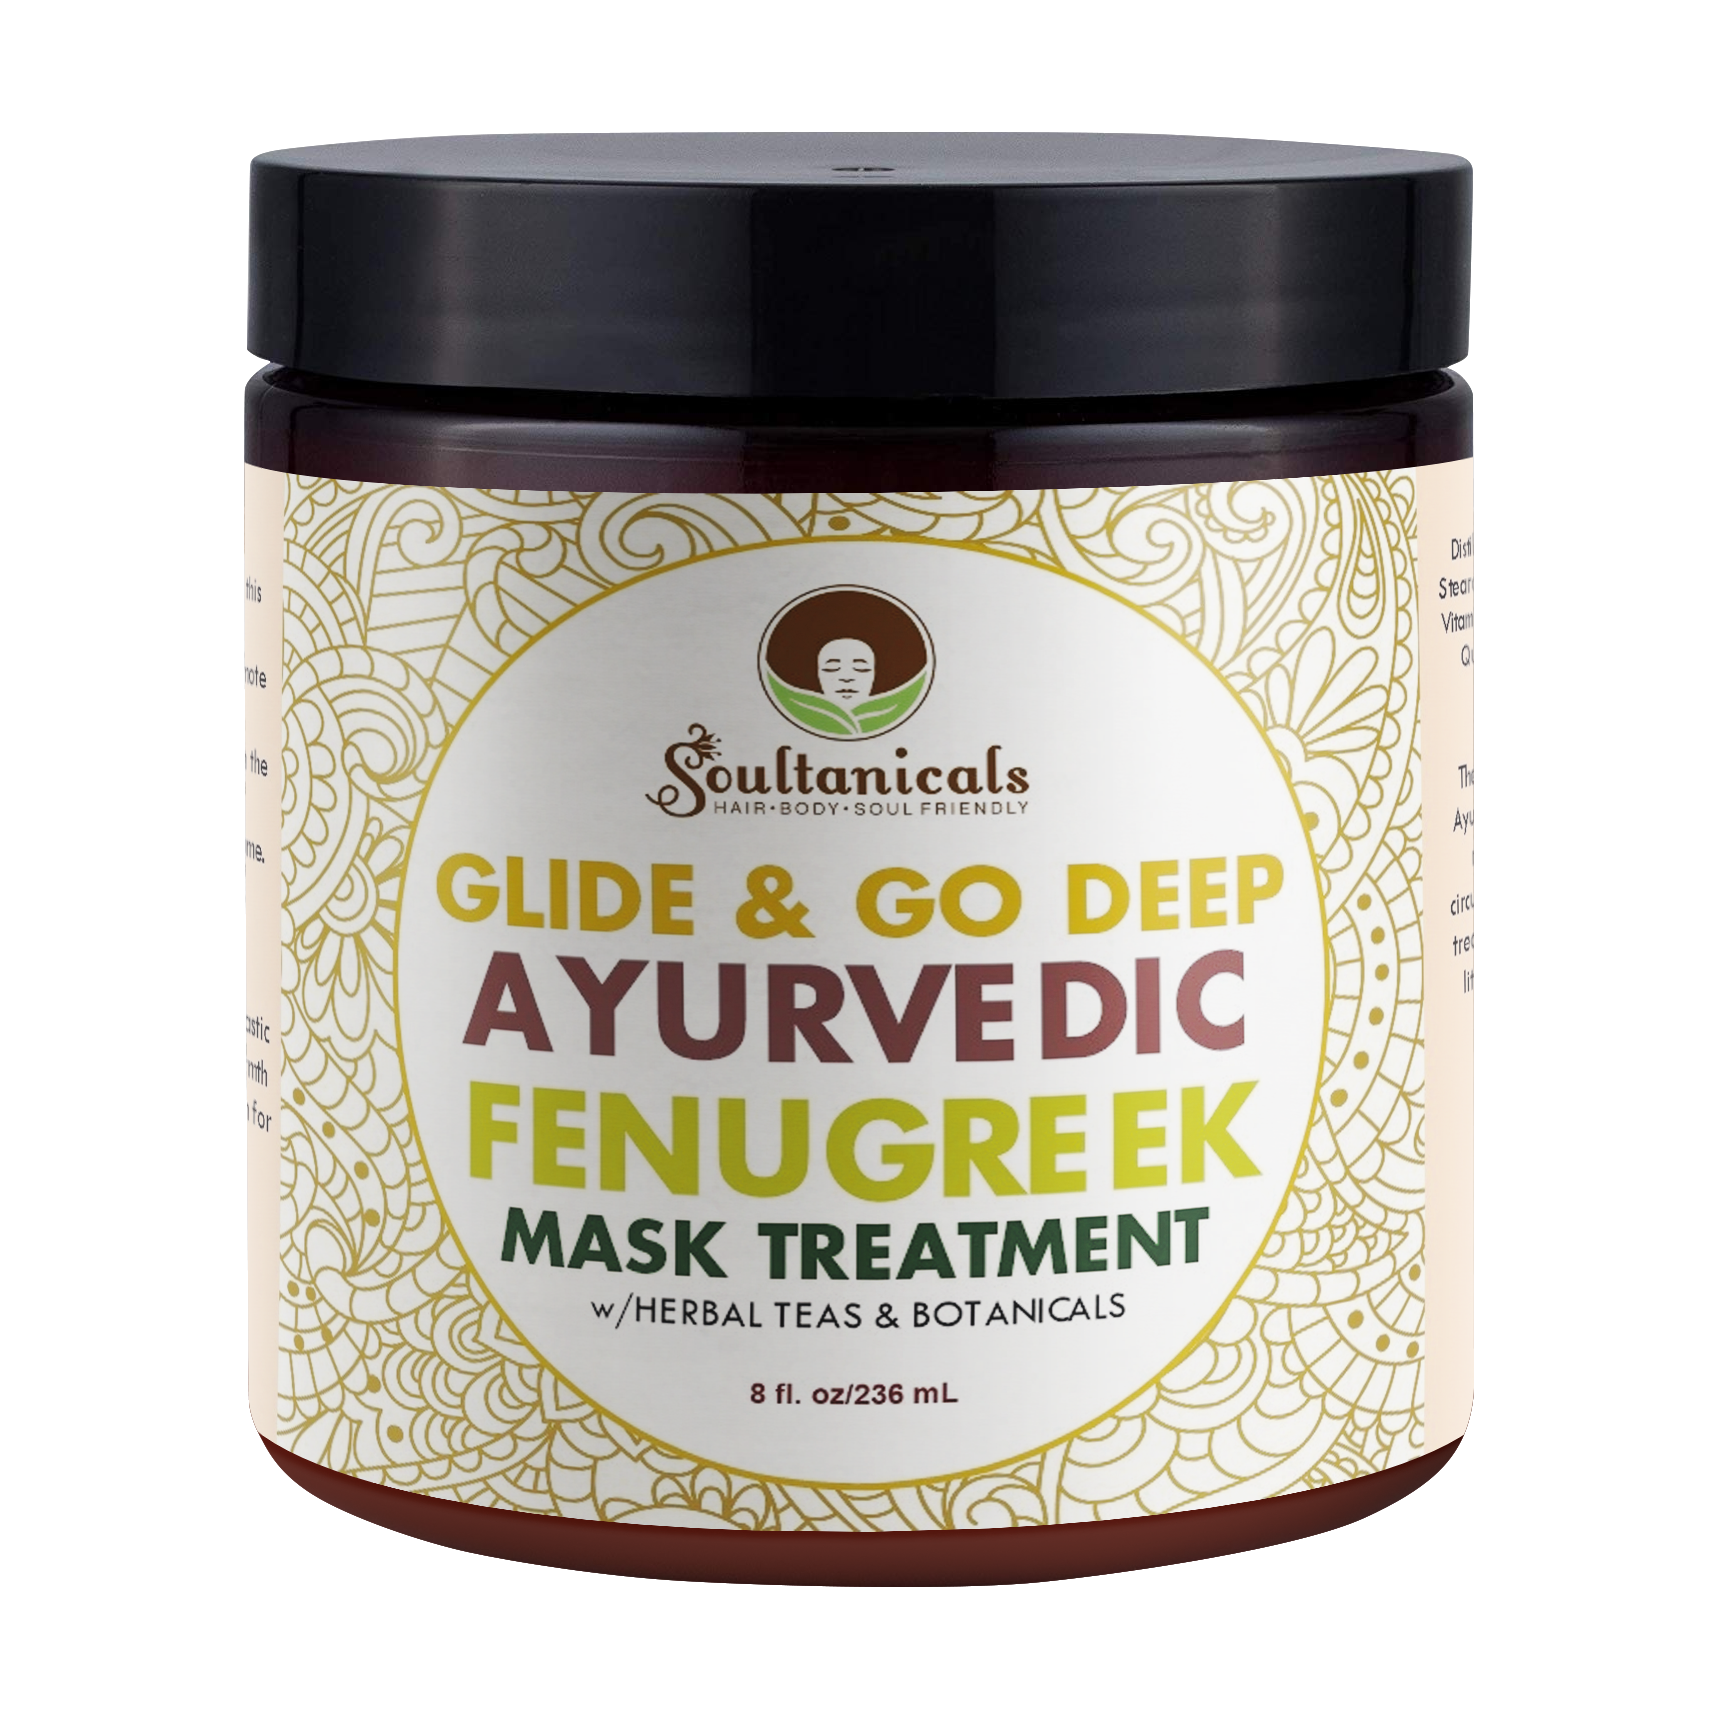 Glide & Go Deep Ayurvedic Fenugreek Mask Treatment